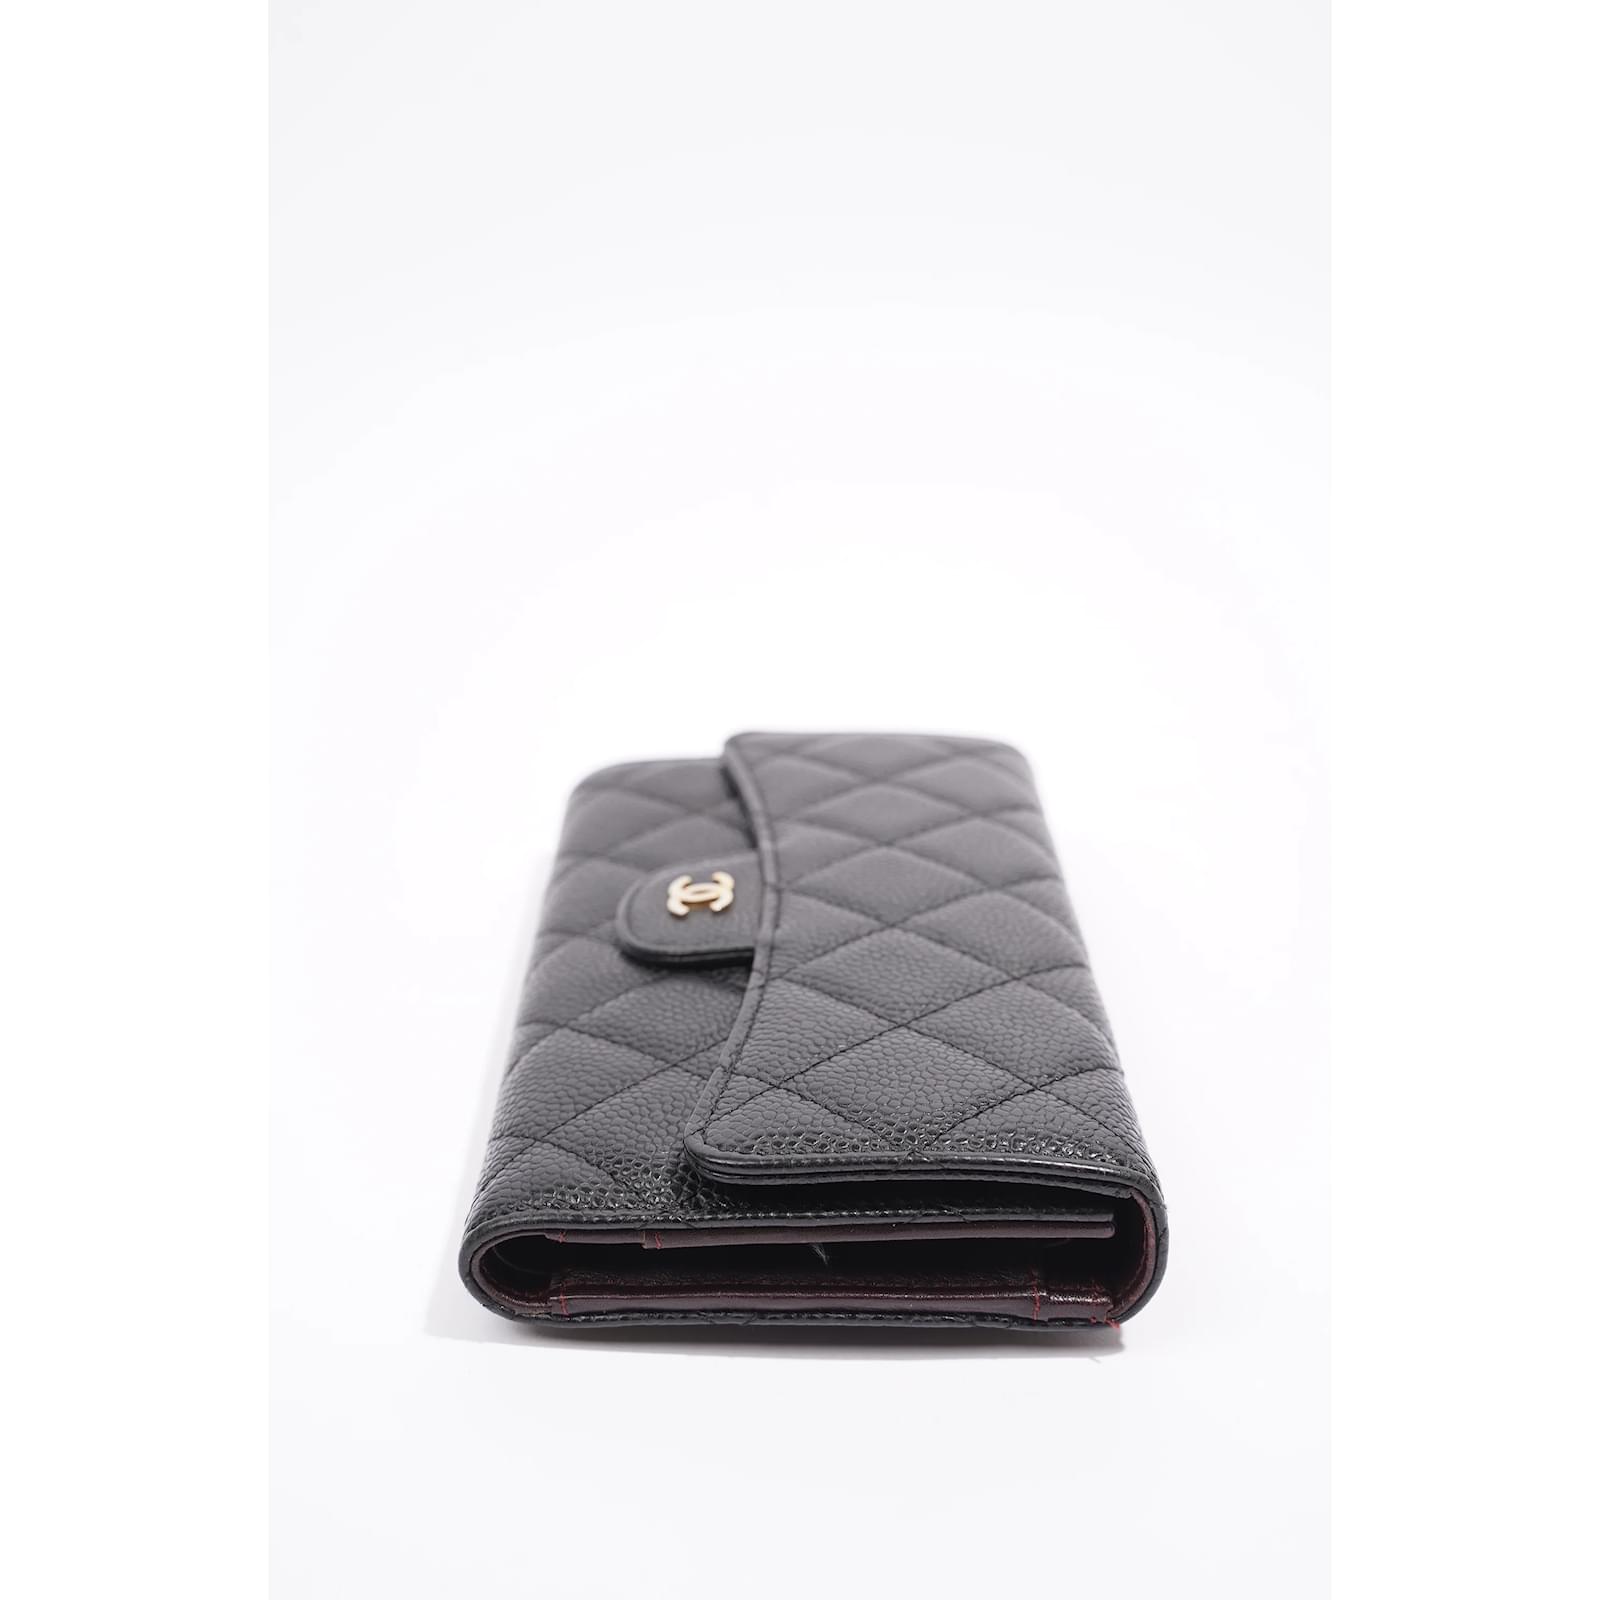 Chanel Black Caviar Small Classic Flap Wallet, myGemma, QA